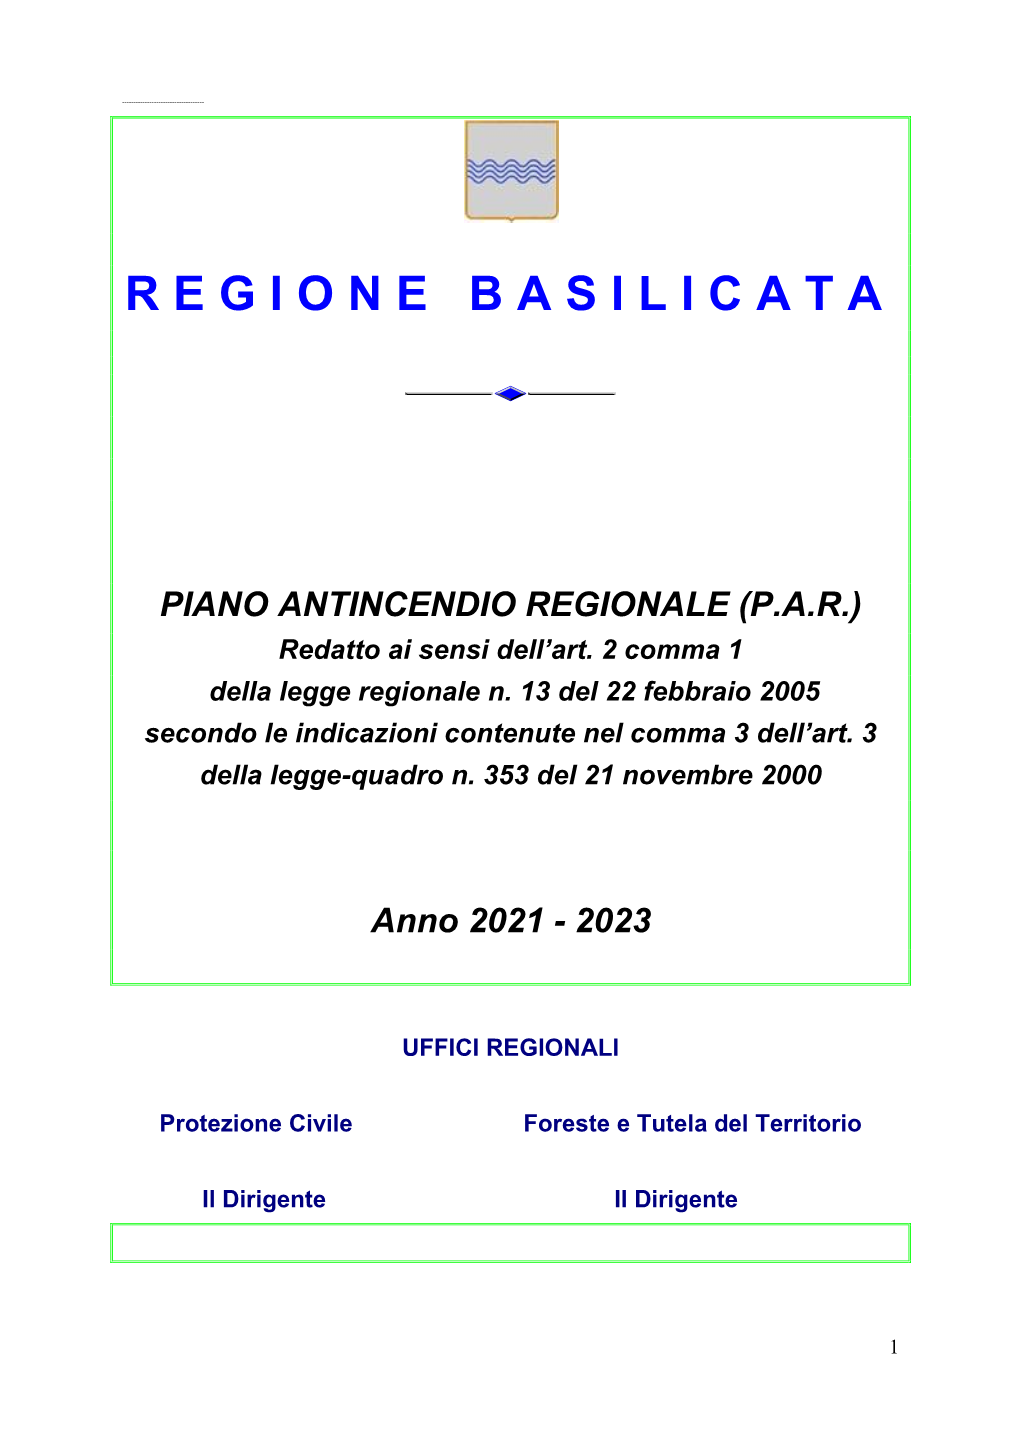 Piano Antincendio Regionale 2021-2023